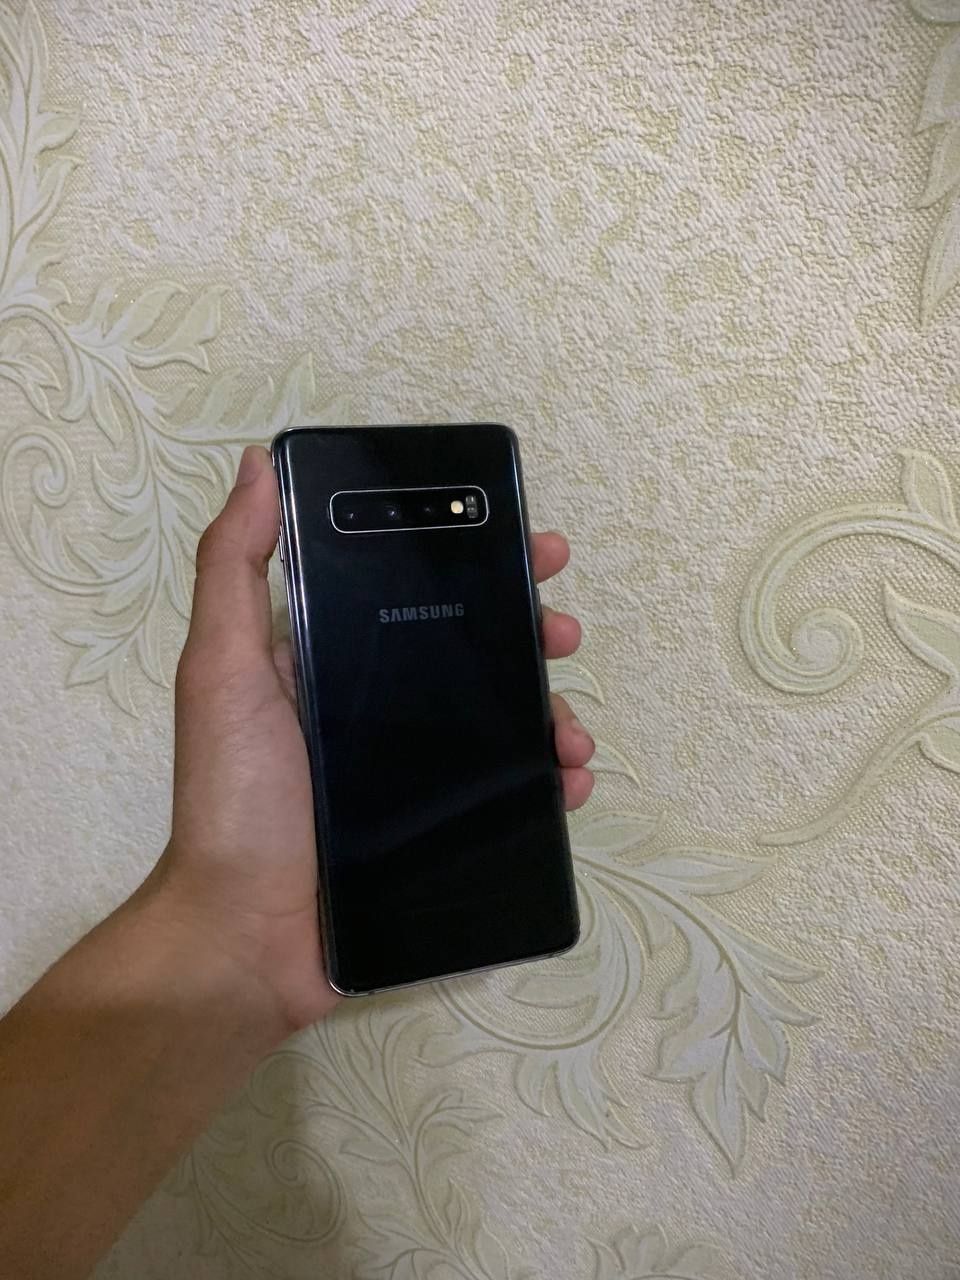 Samsung S10 vietnam 2 sim